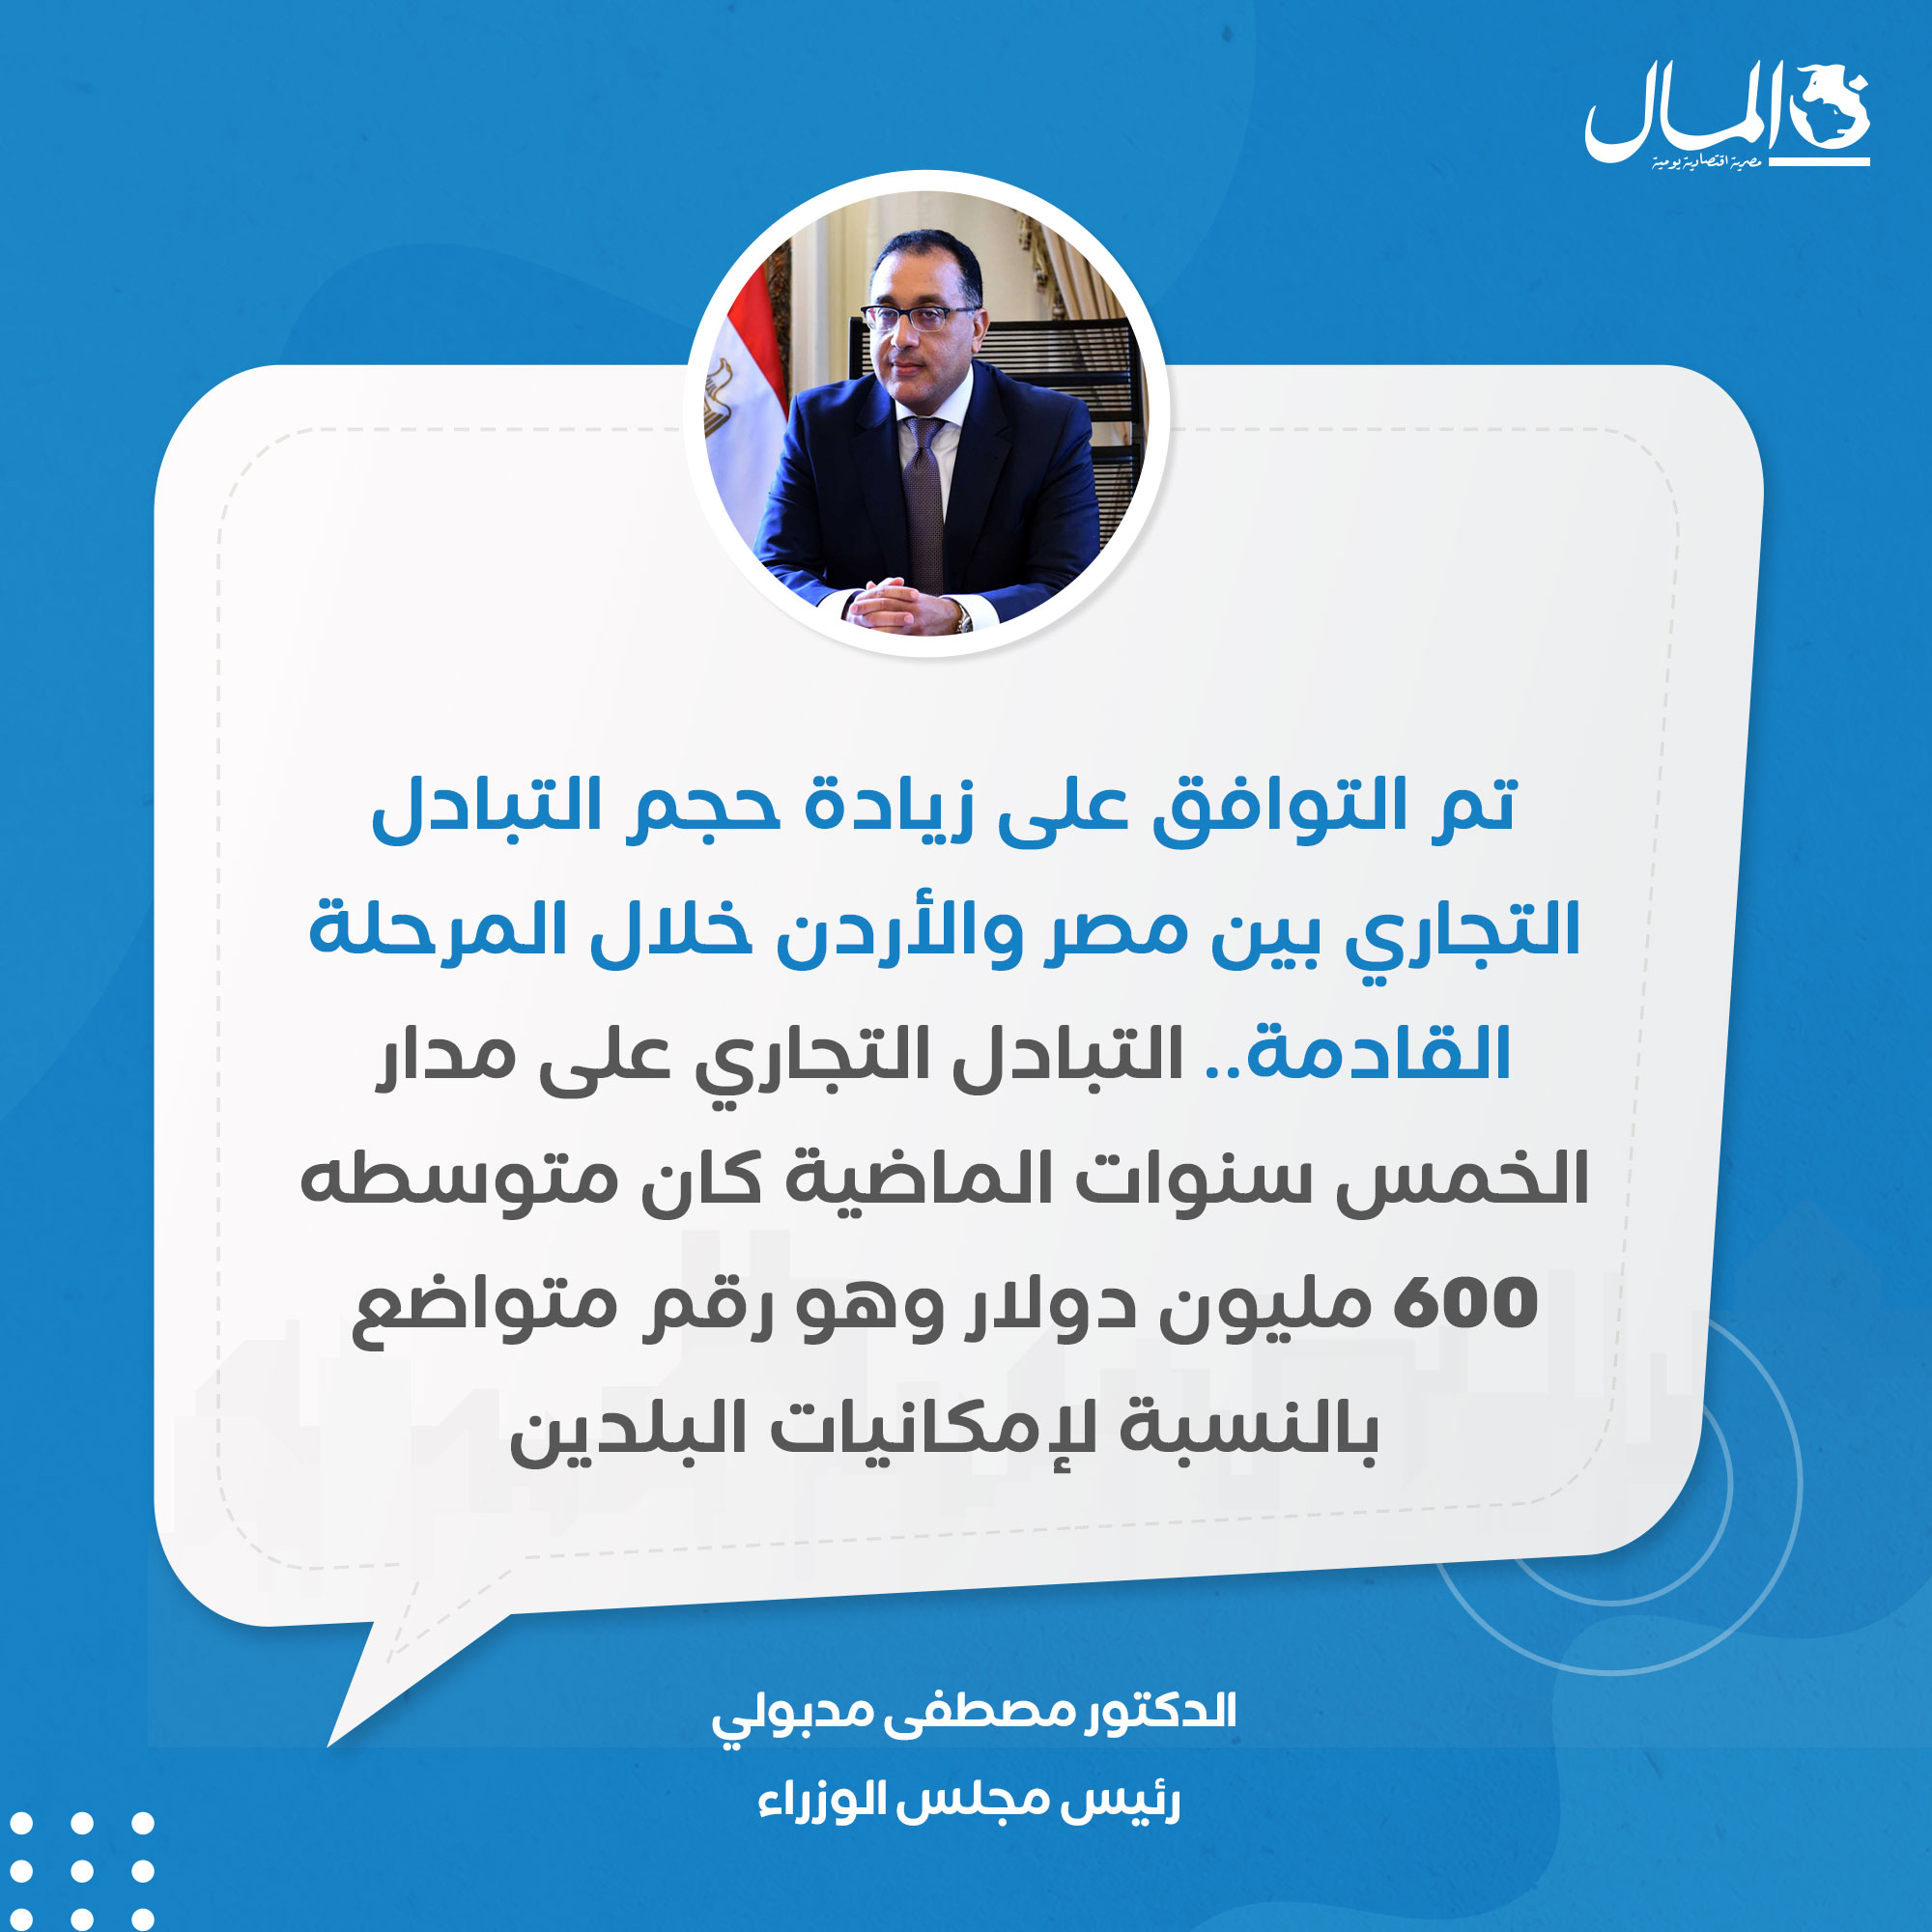 مدبولي: هناك رغبة بين مصر و الأردن لزيادة التبادل التجاري وتحقيق الاستفادة المشتركة للبلدين وللقطاع الخاص 